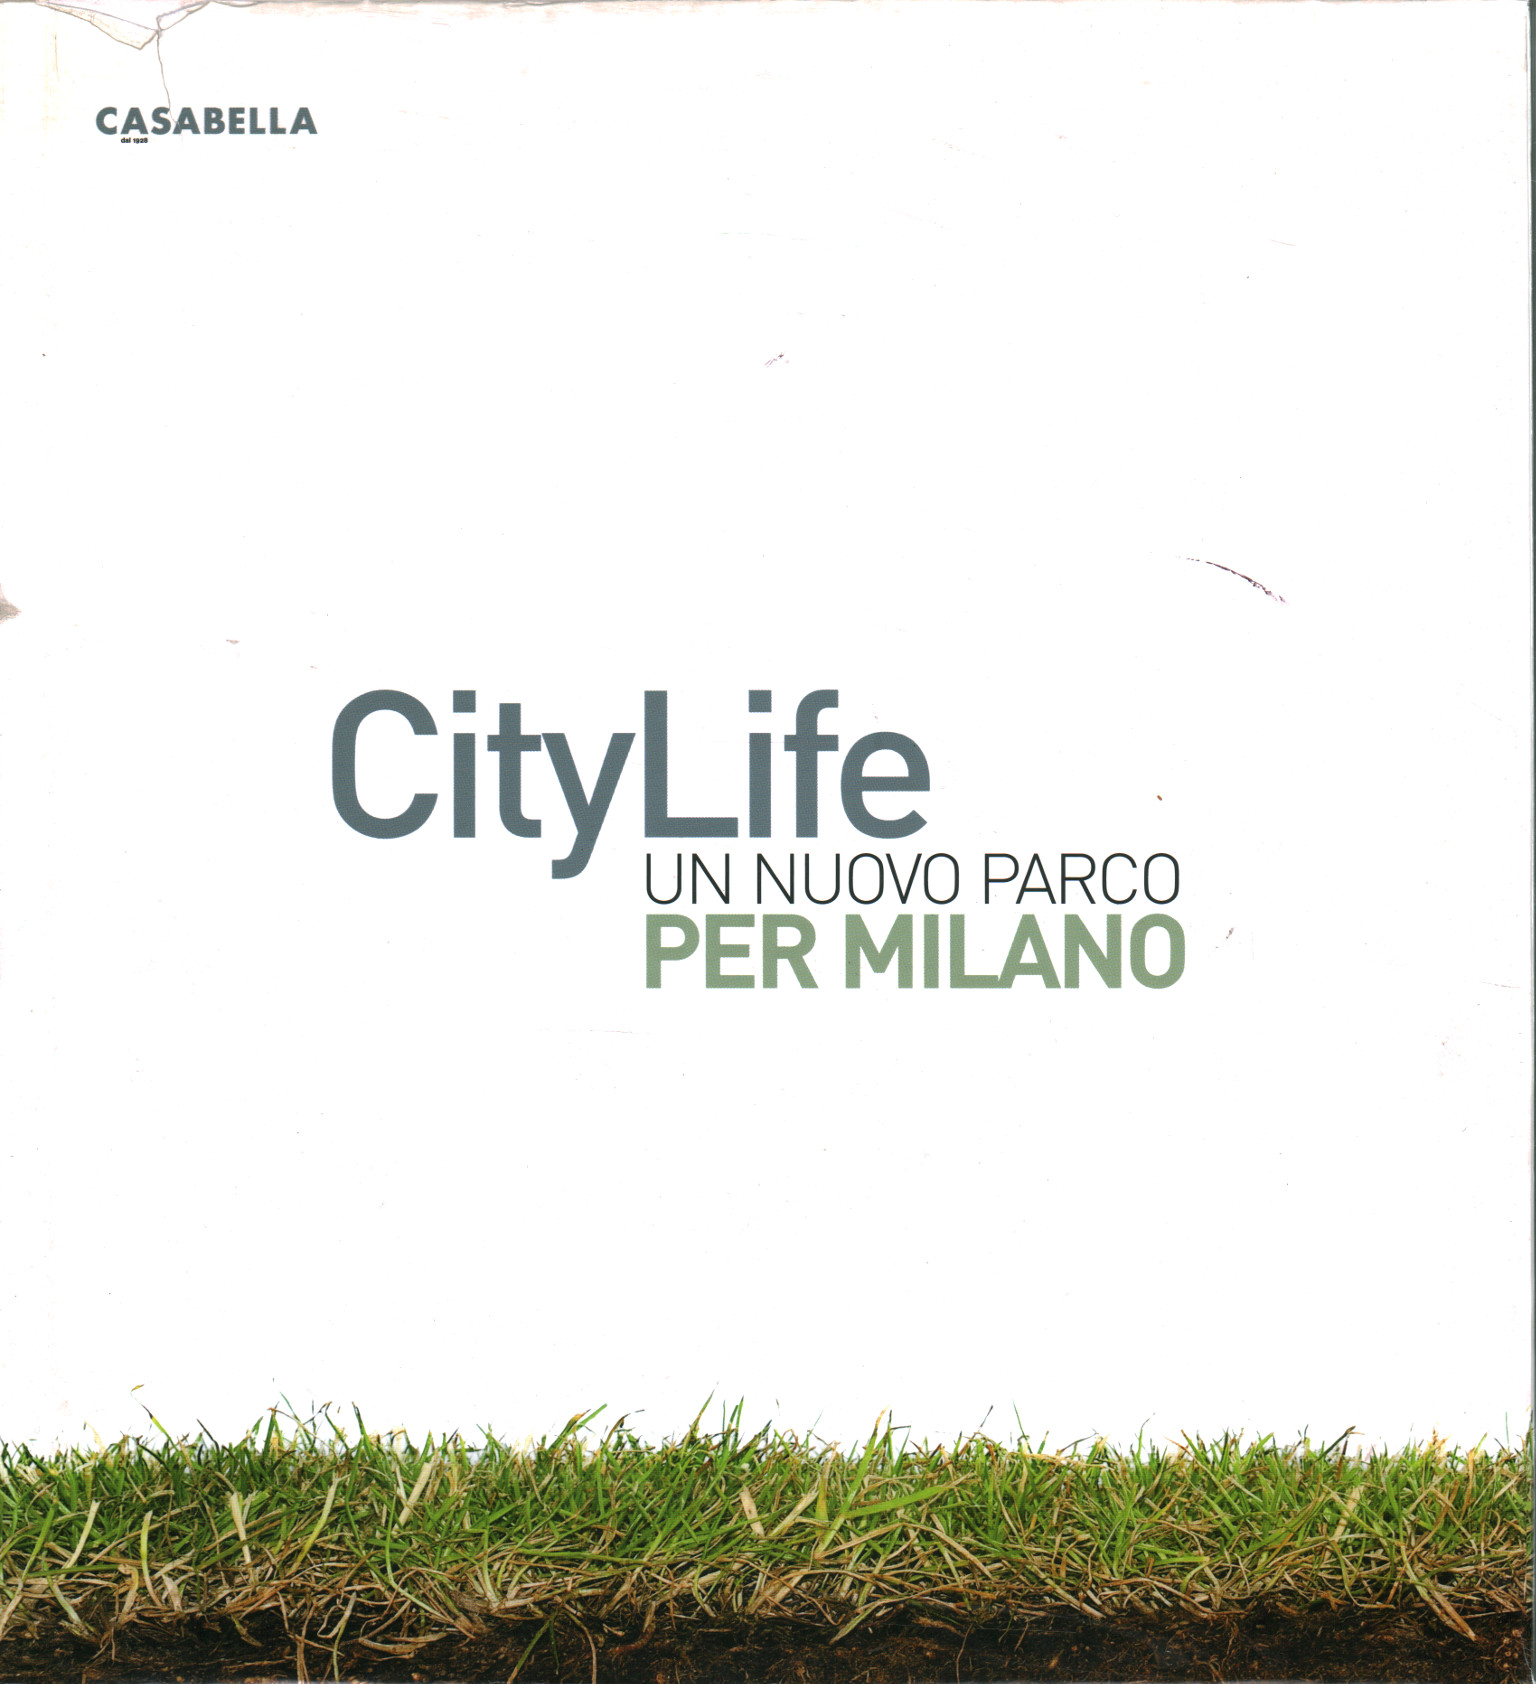 CityLife un nuovo parco per Milano, Matteo Vercelloni